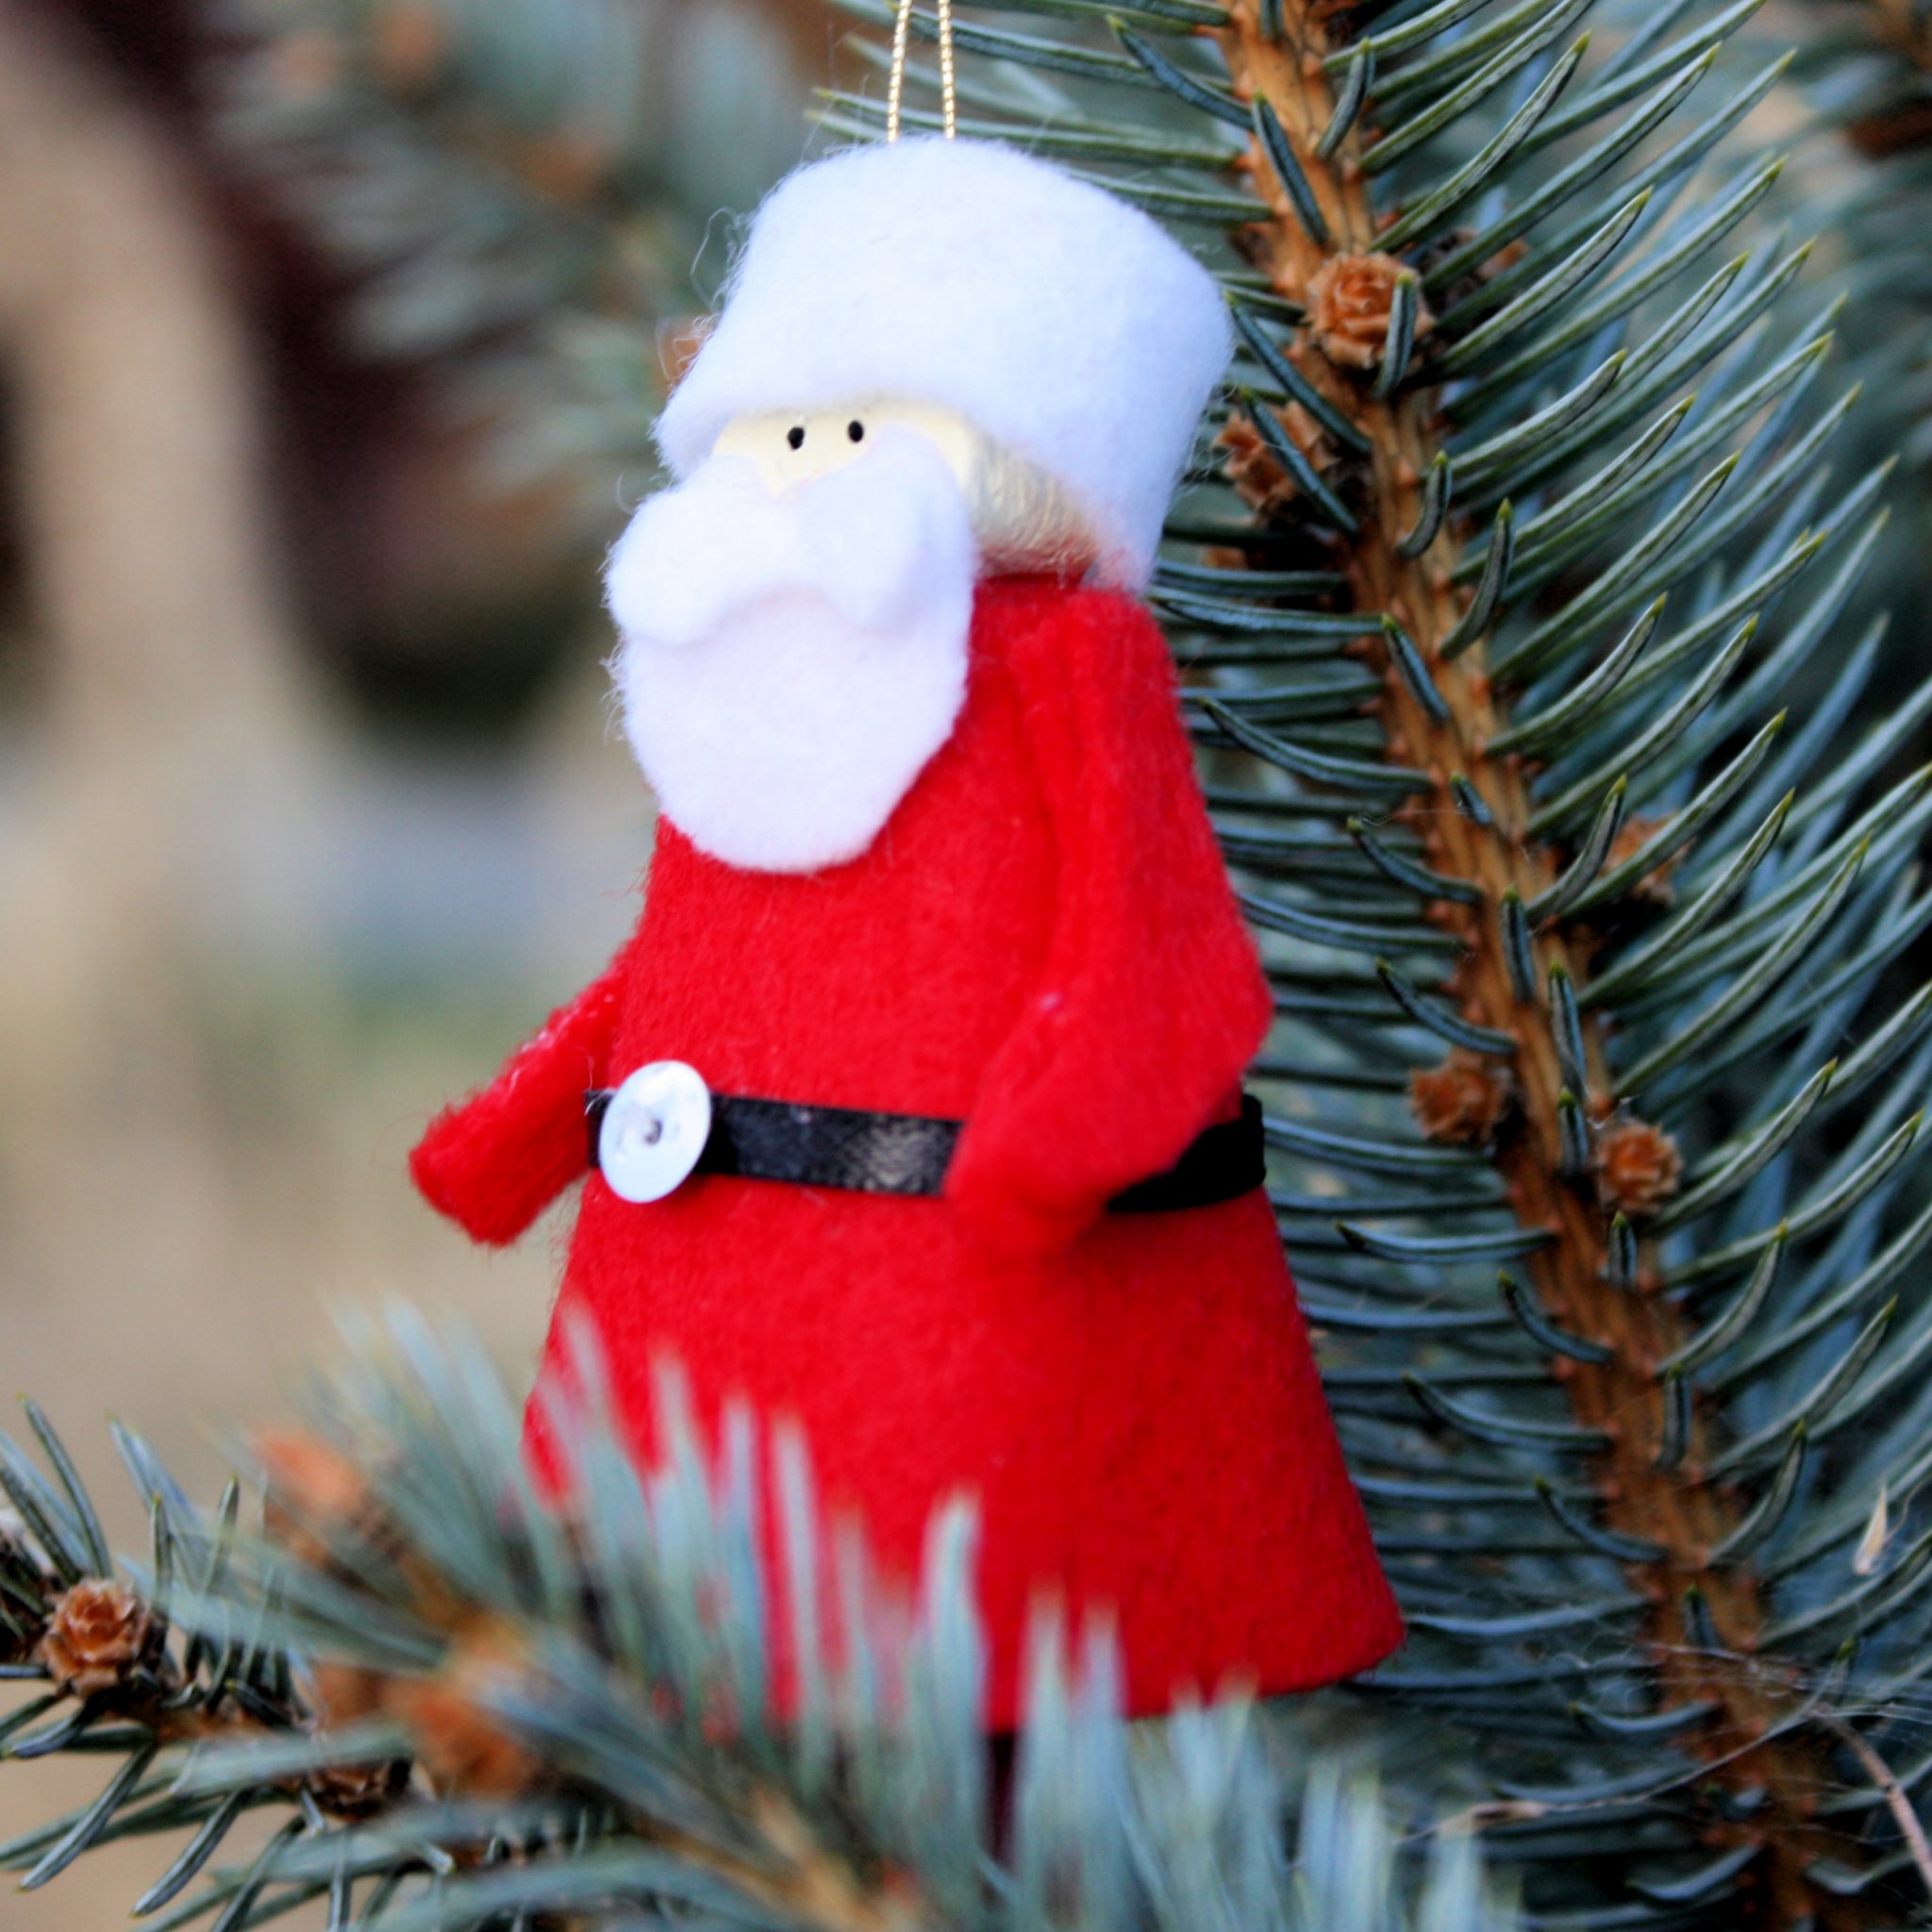 Clothespin Santa Ornament